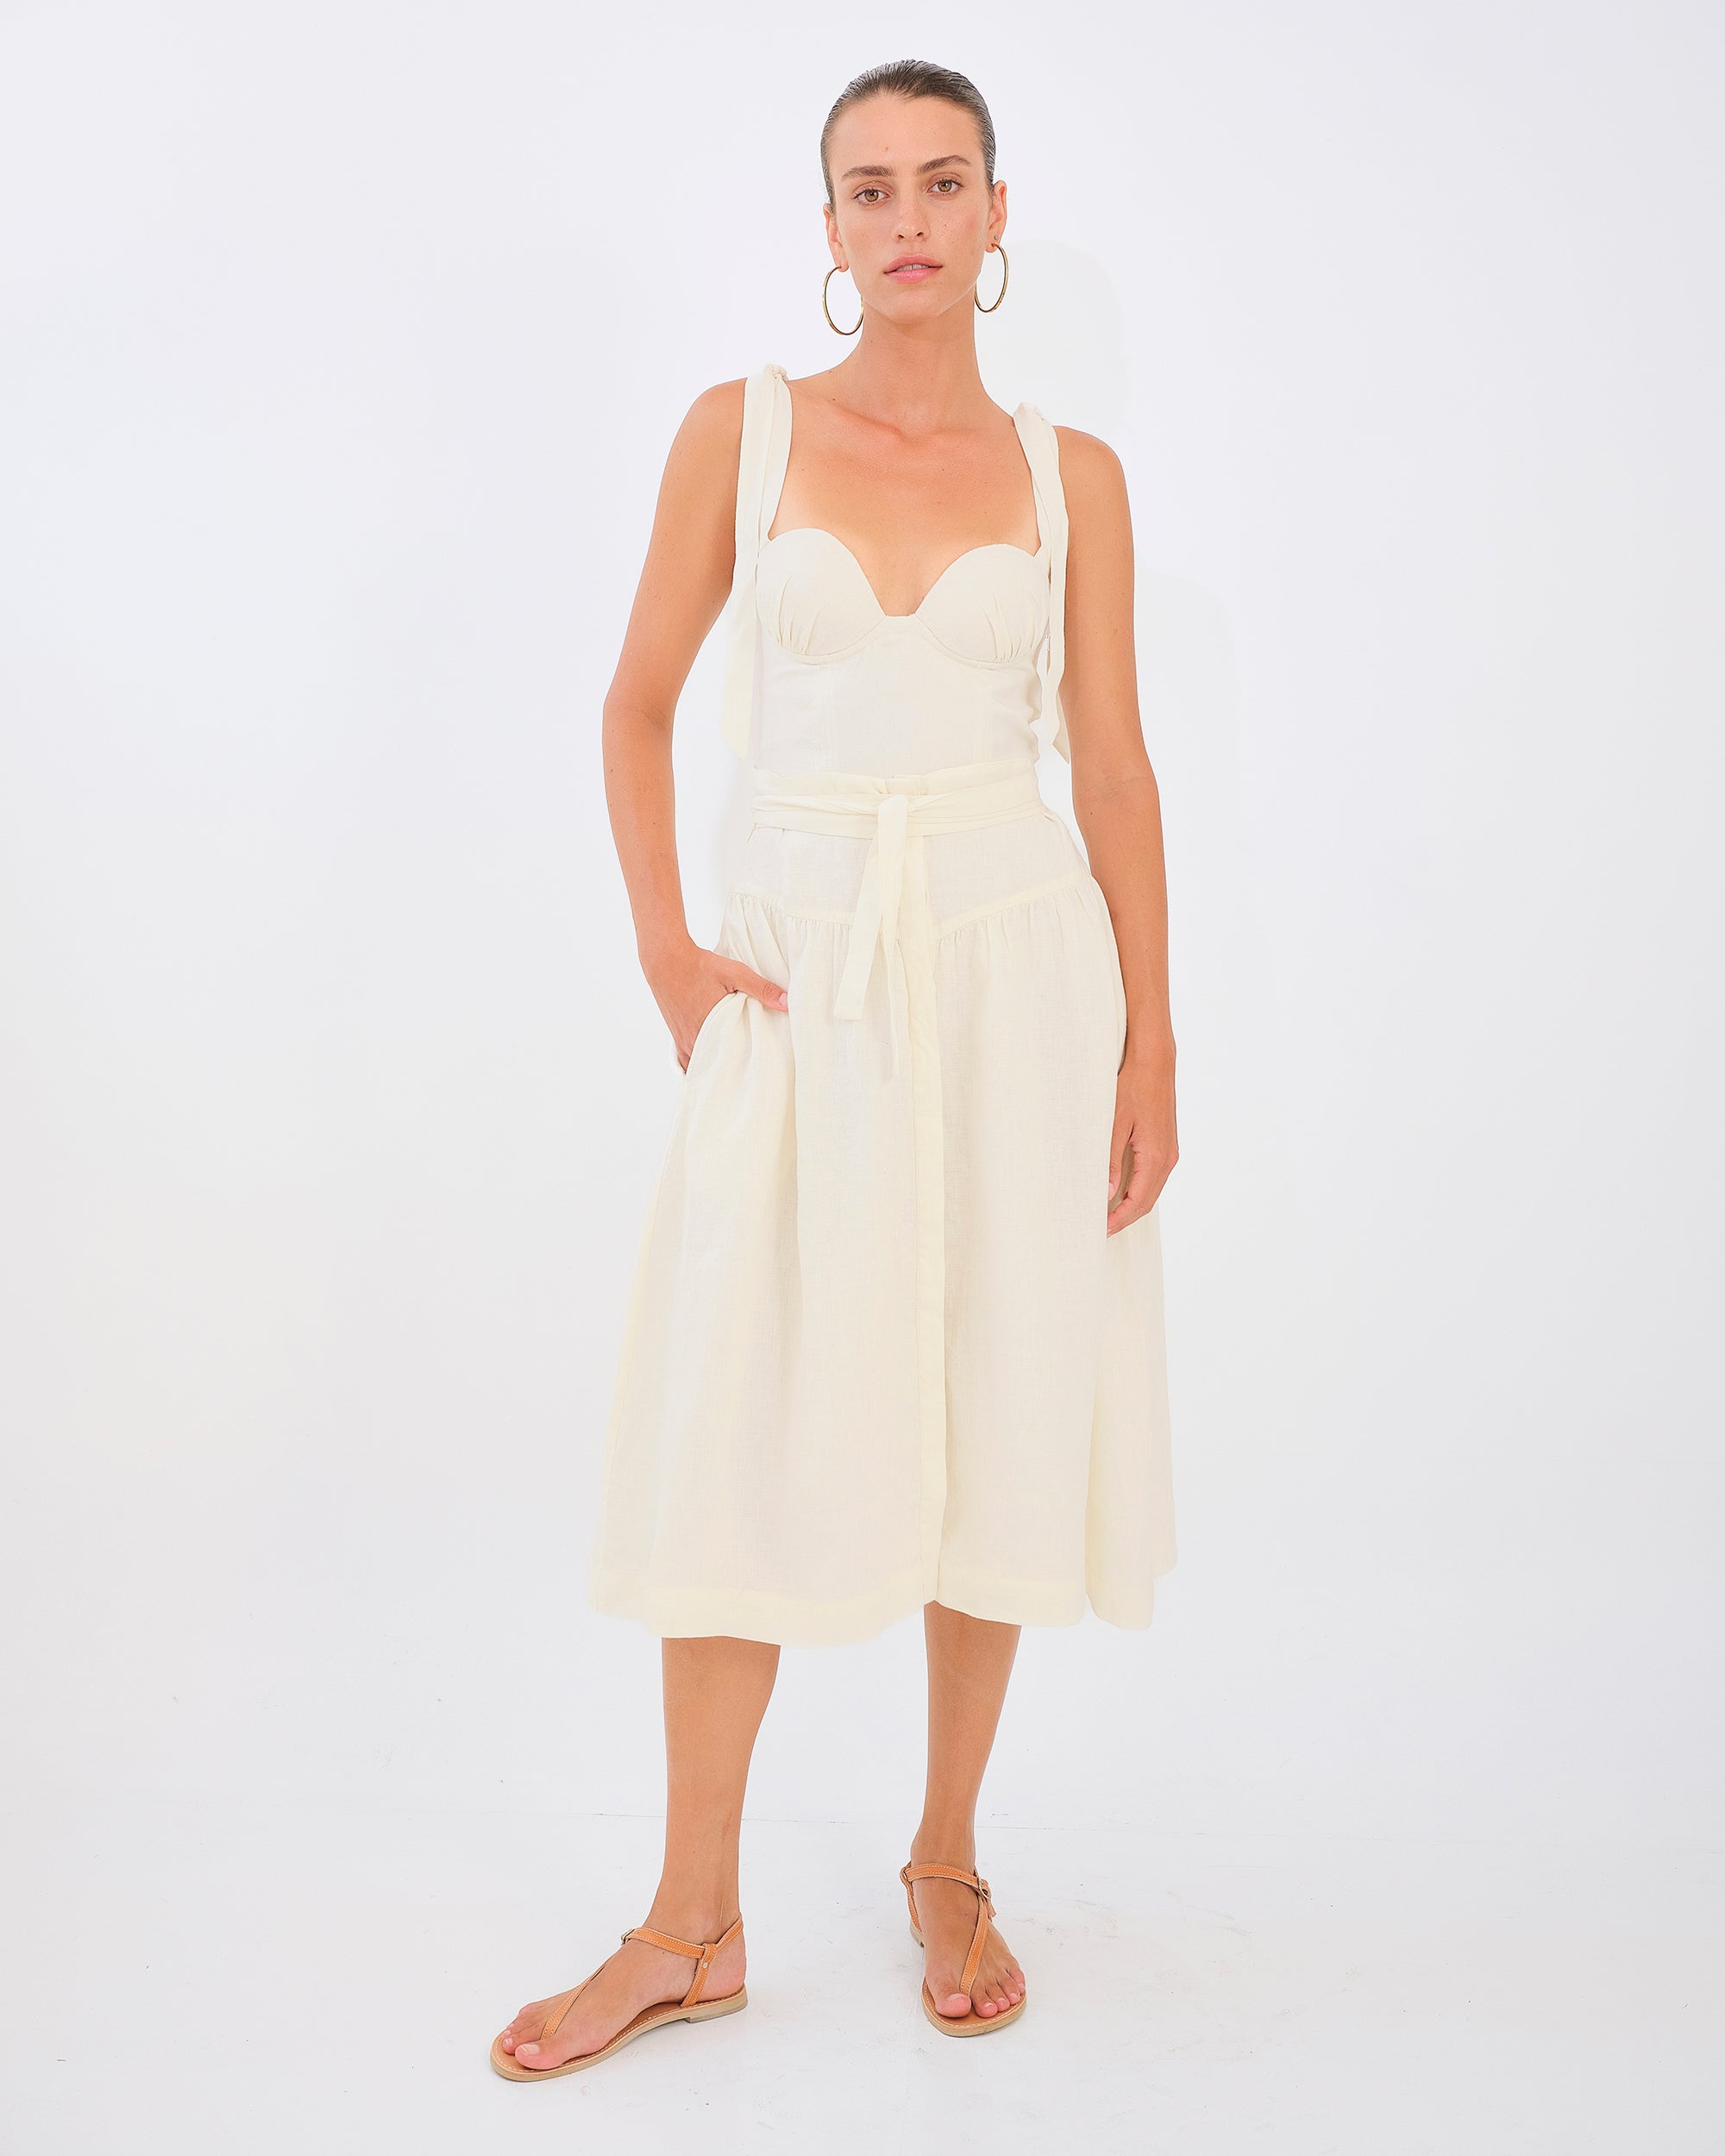 Tiana Skirt - White Linen by Desert Queen